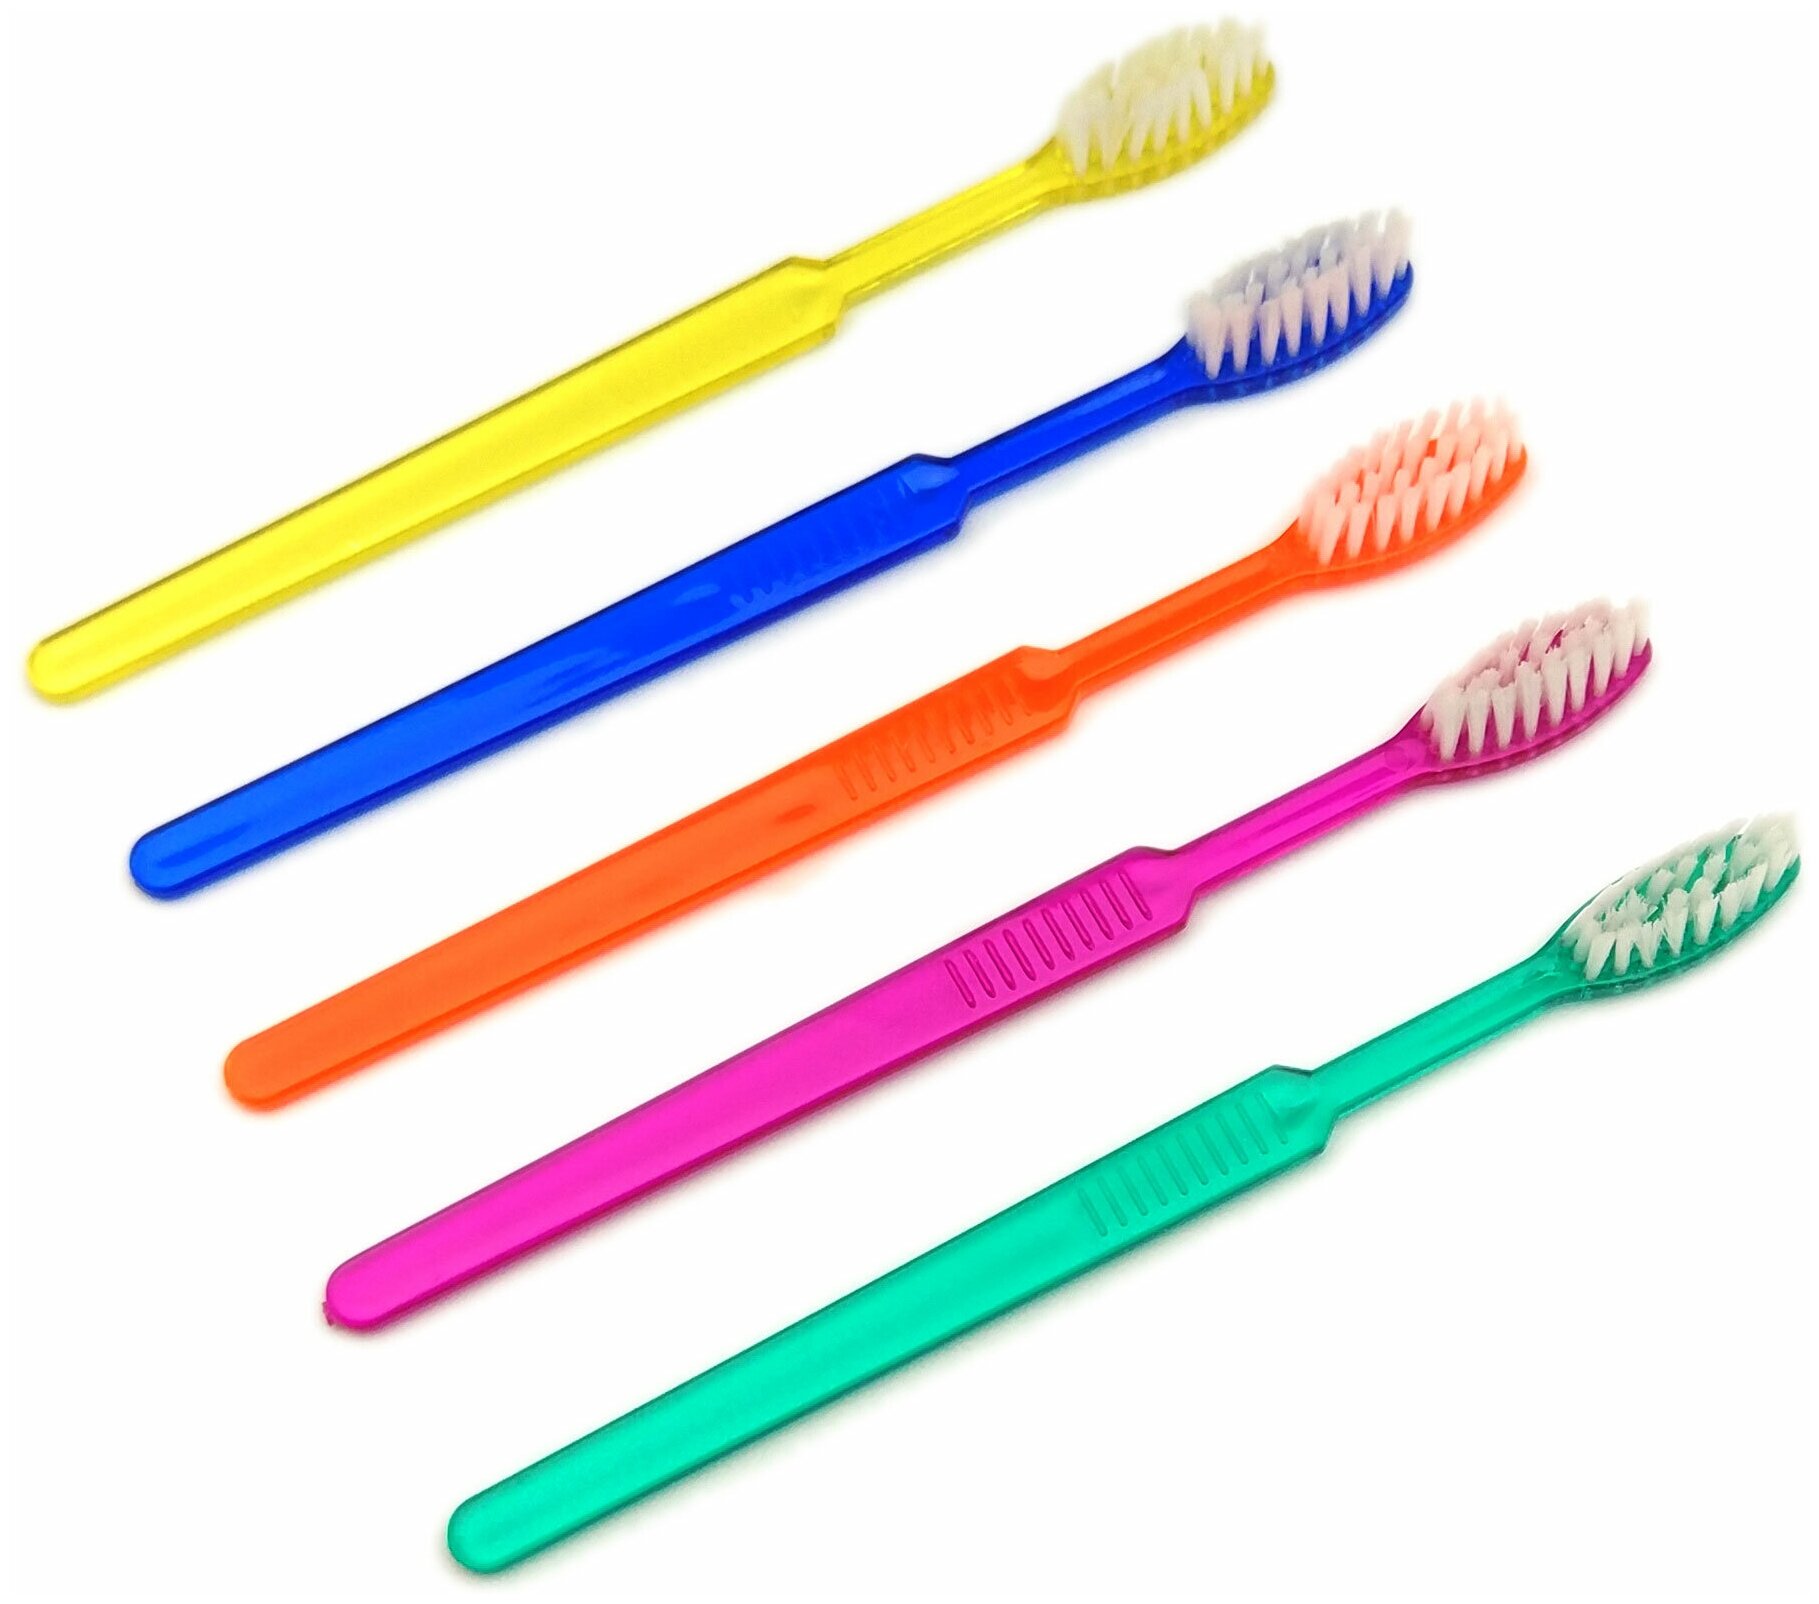 Зубная щетка с нанесенной зубной пастой "Sherbet" (10шт. в упаковке). Цвета в упаковке: желтый, зеленый, синий, оранжевый, фиолетовый